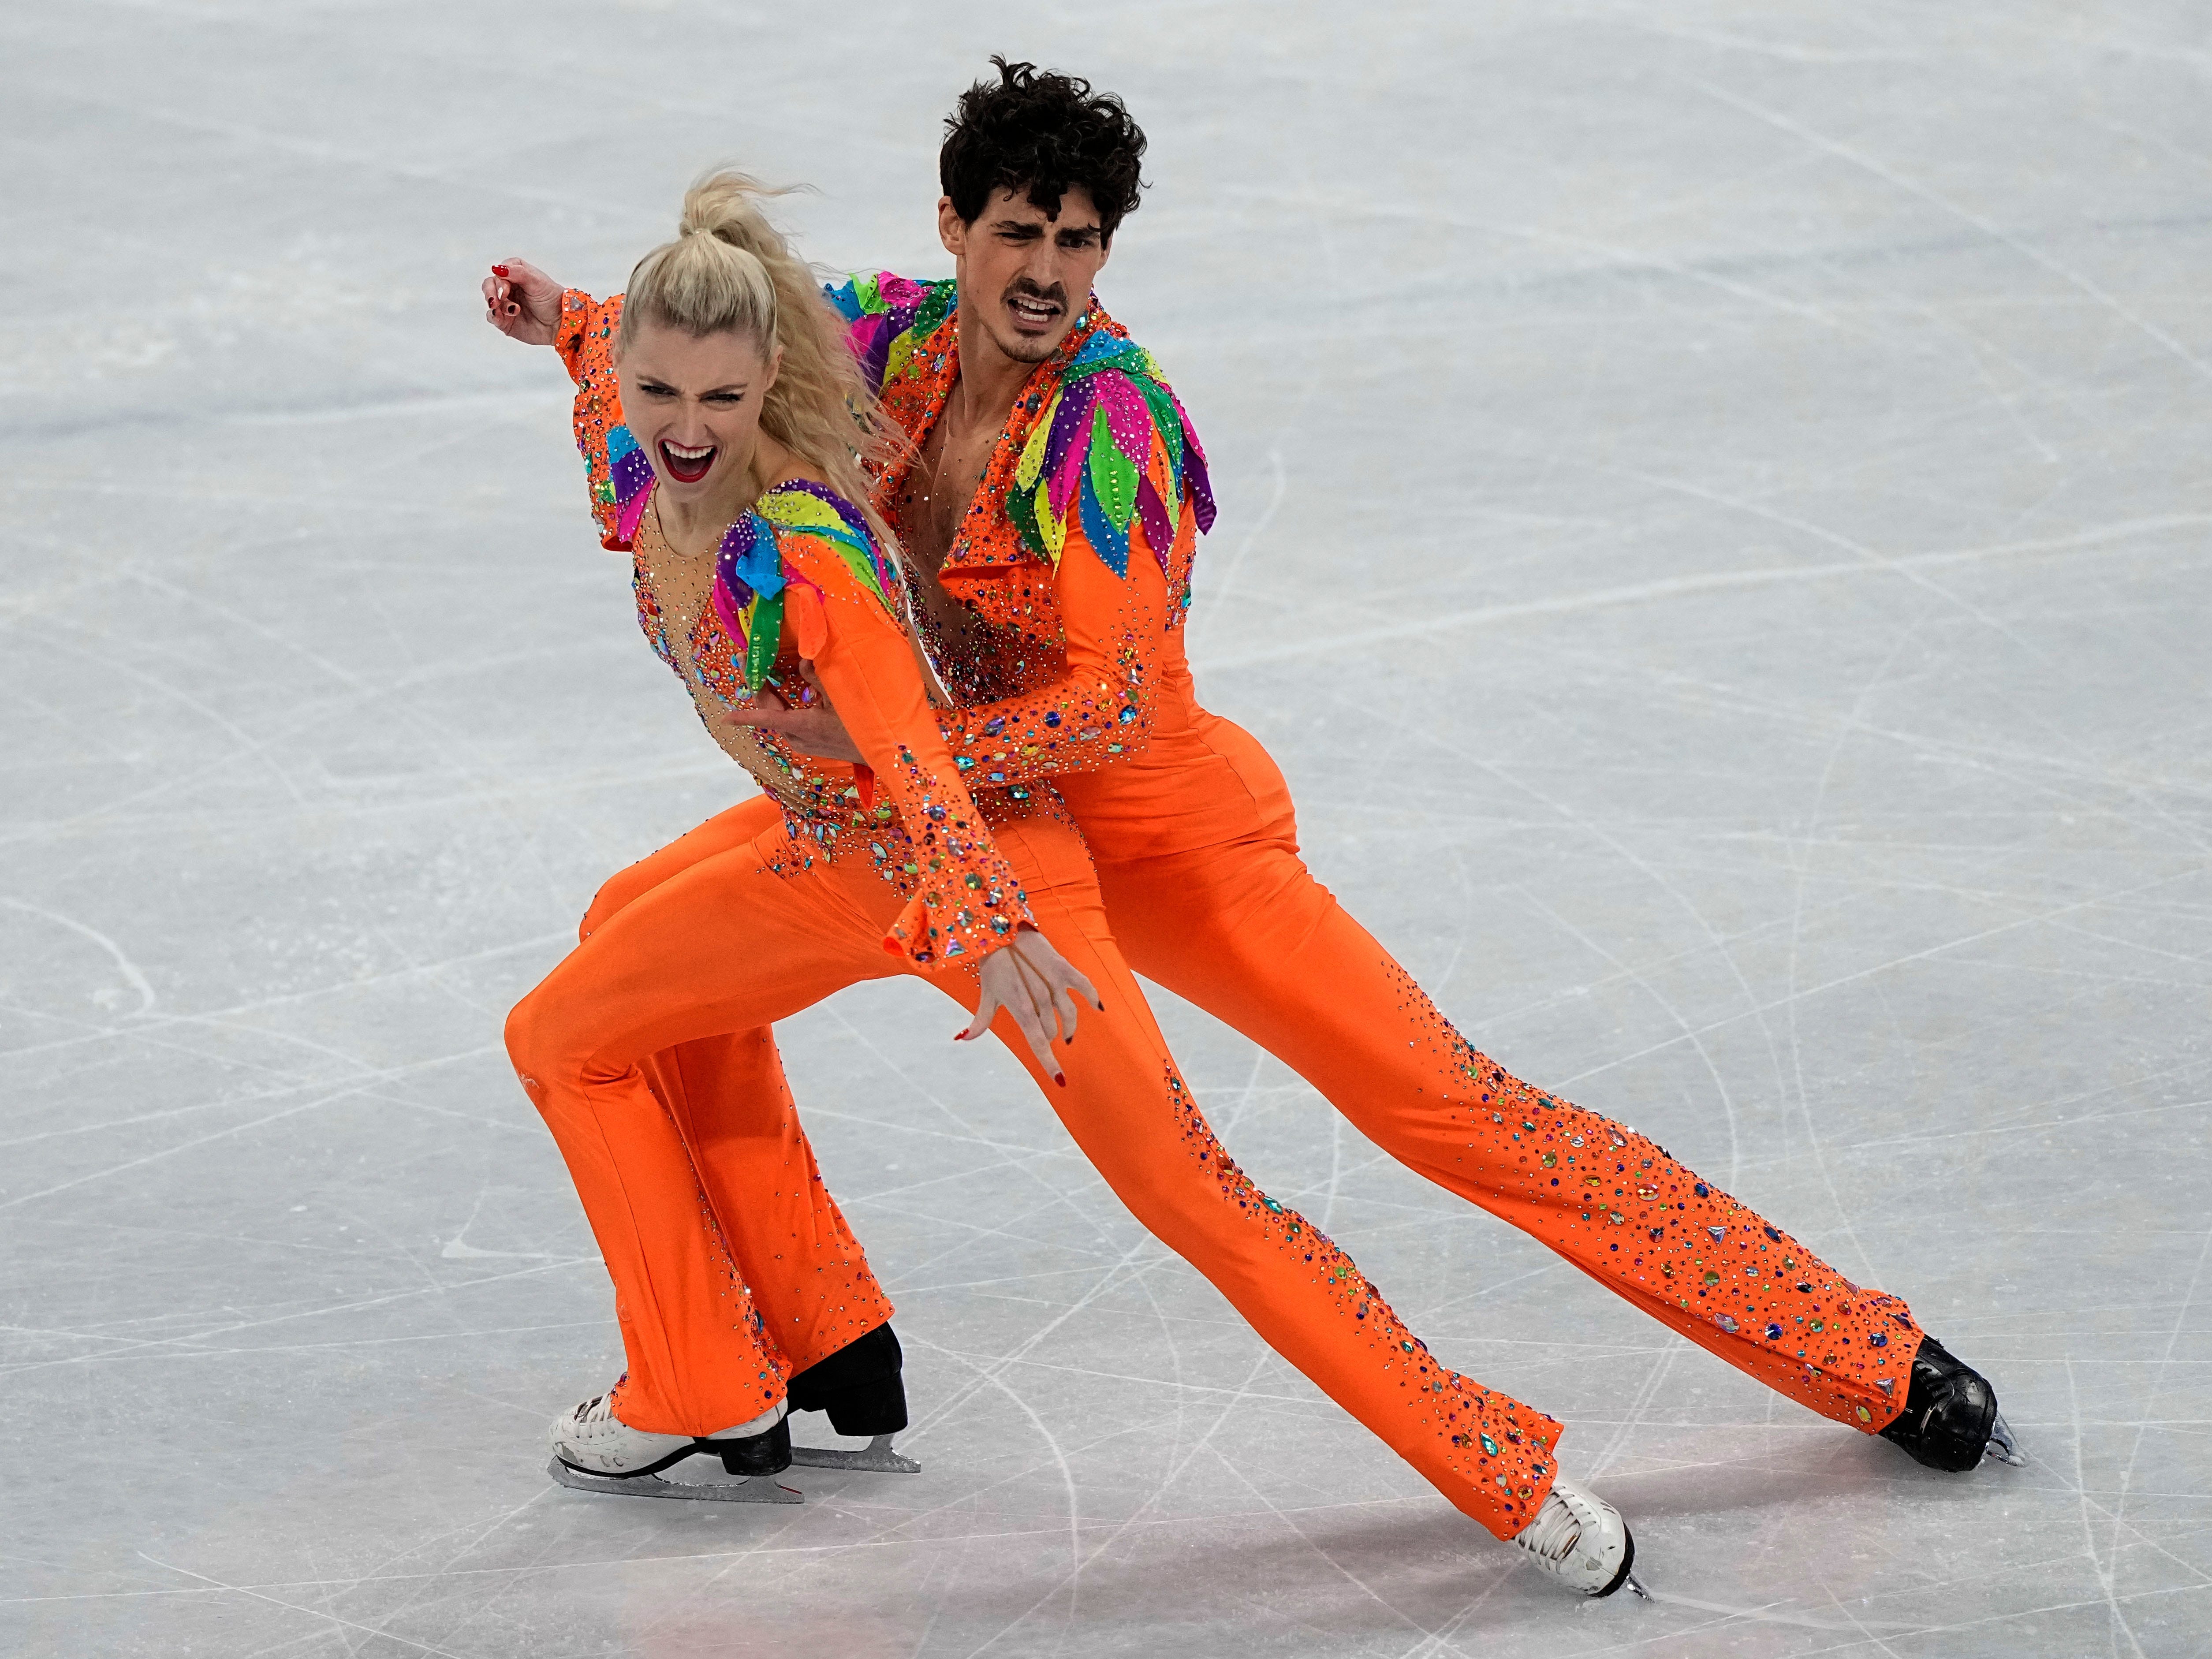 Piper Gilles und Paul Poirier aus Kanada führen ihre Kür beim Eistanzwettbewerb während des Eiskunstlaufs bei den Olympischen Winterspielen 2022 am Samstag, den 12. Februar 2022 in Peking auf.